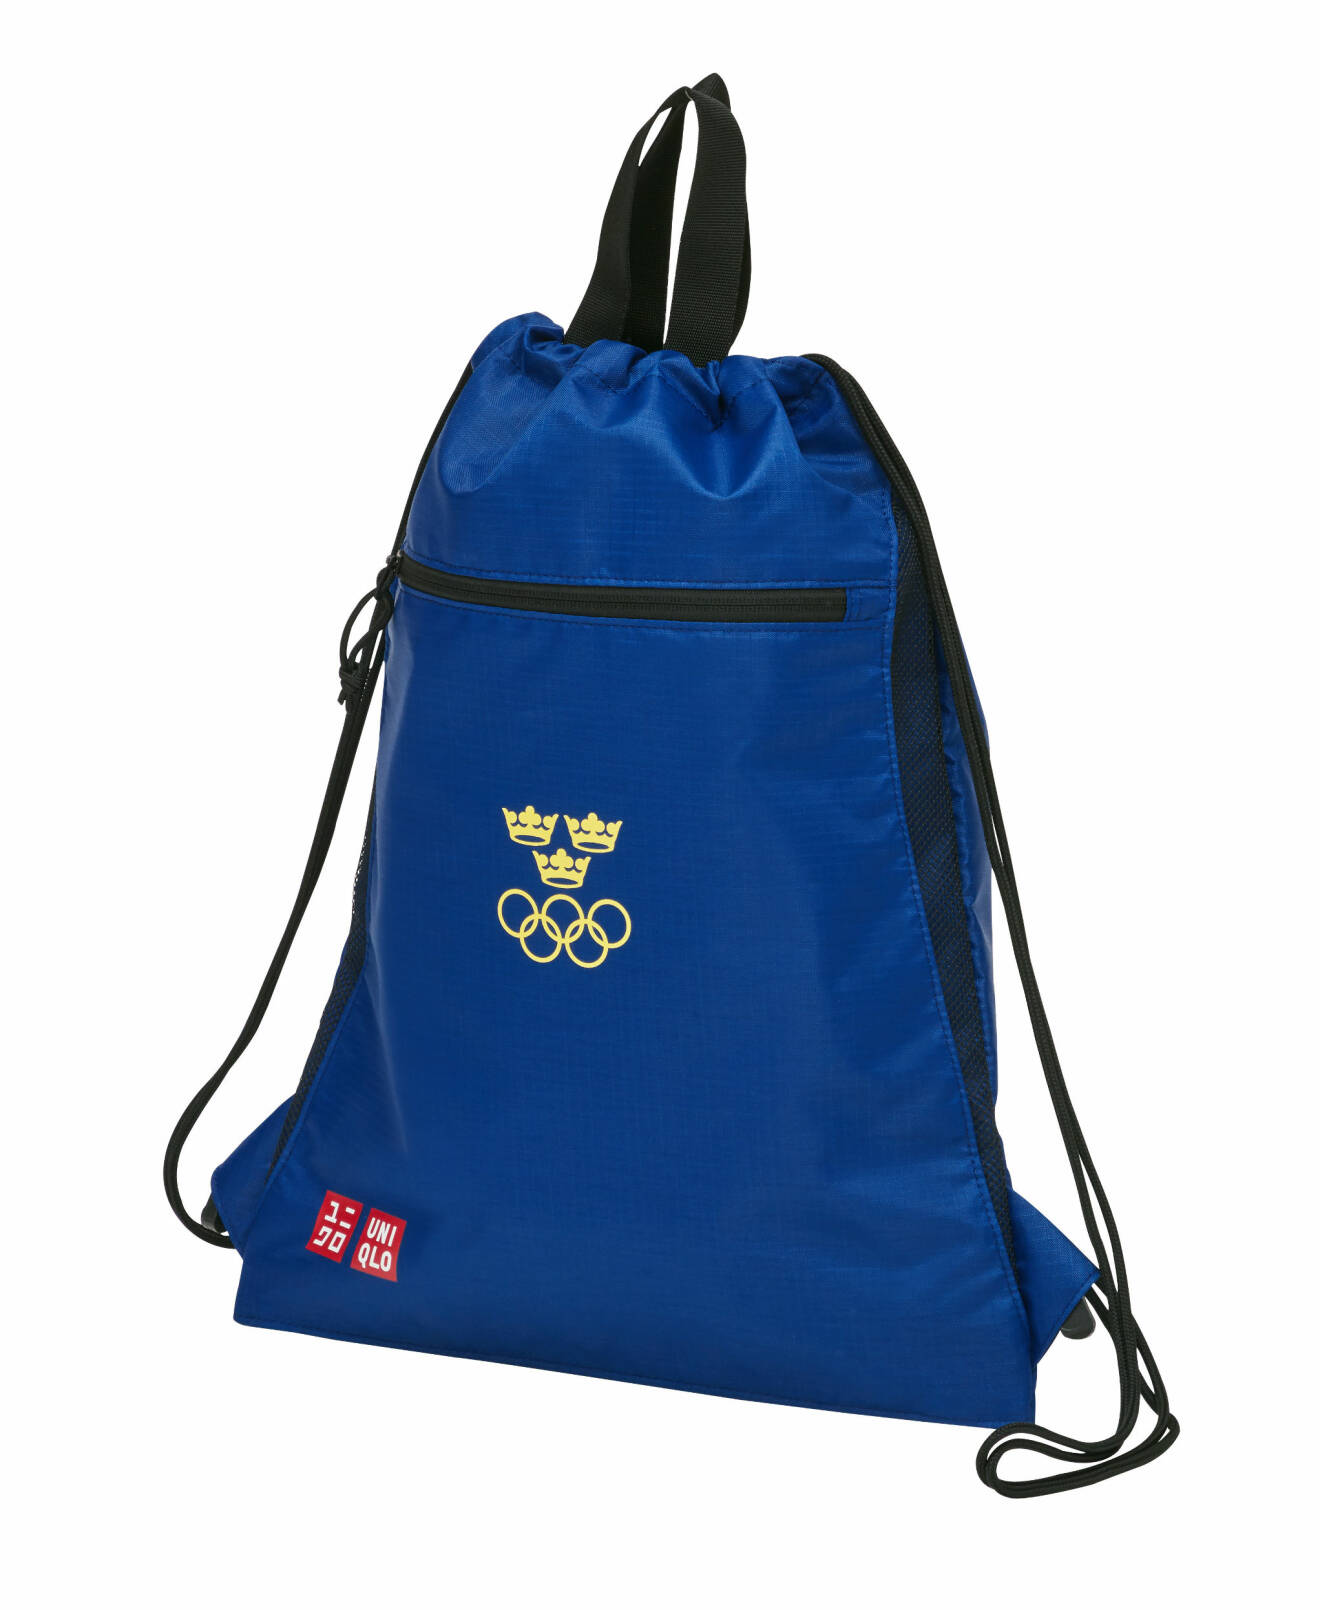 OS ryggsäck Uniqlo för OS i Tokyo.